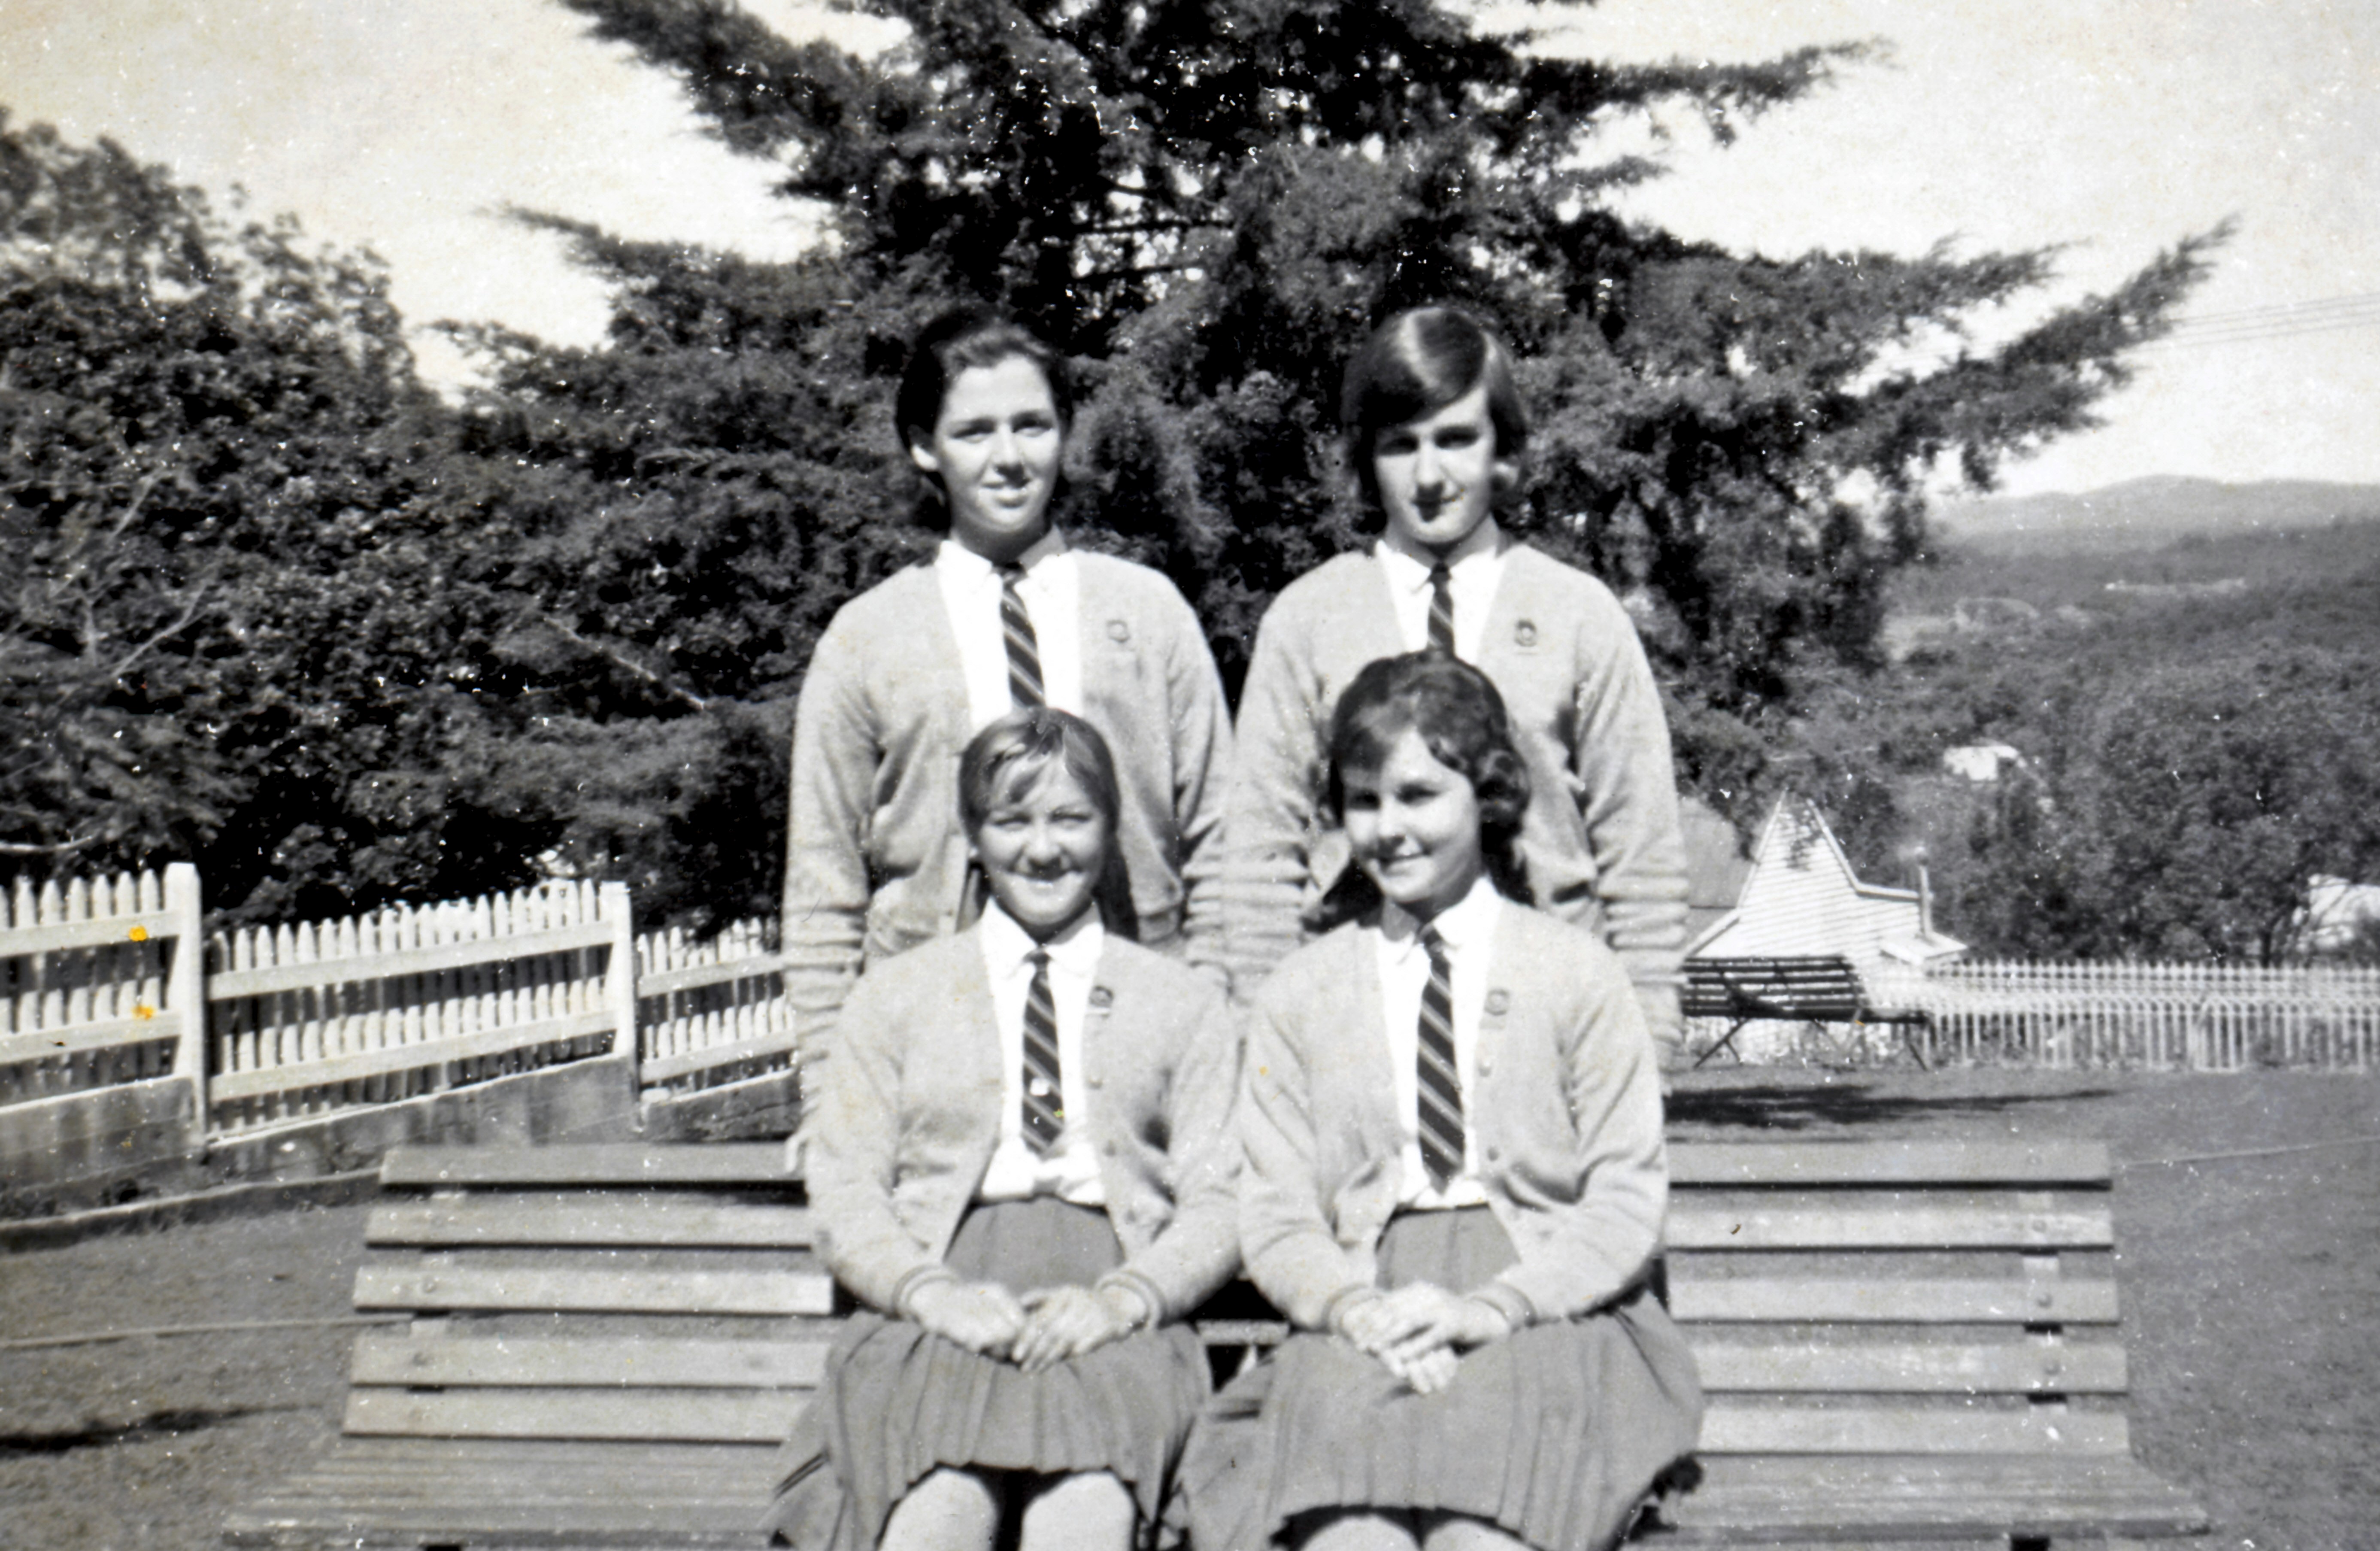 1960's Students 2